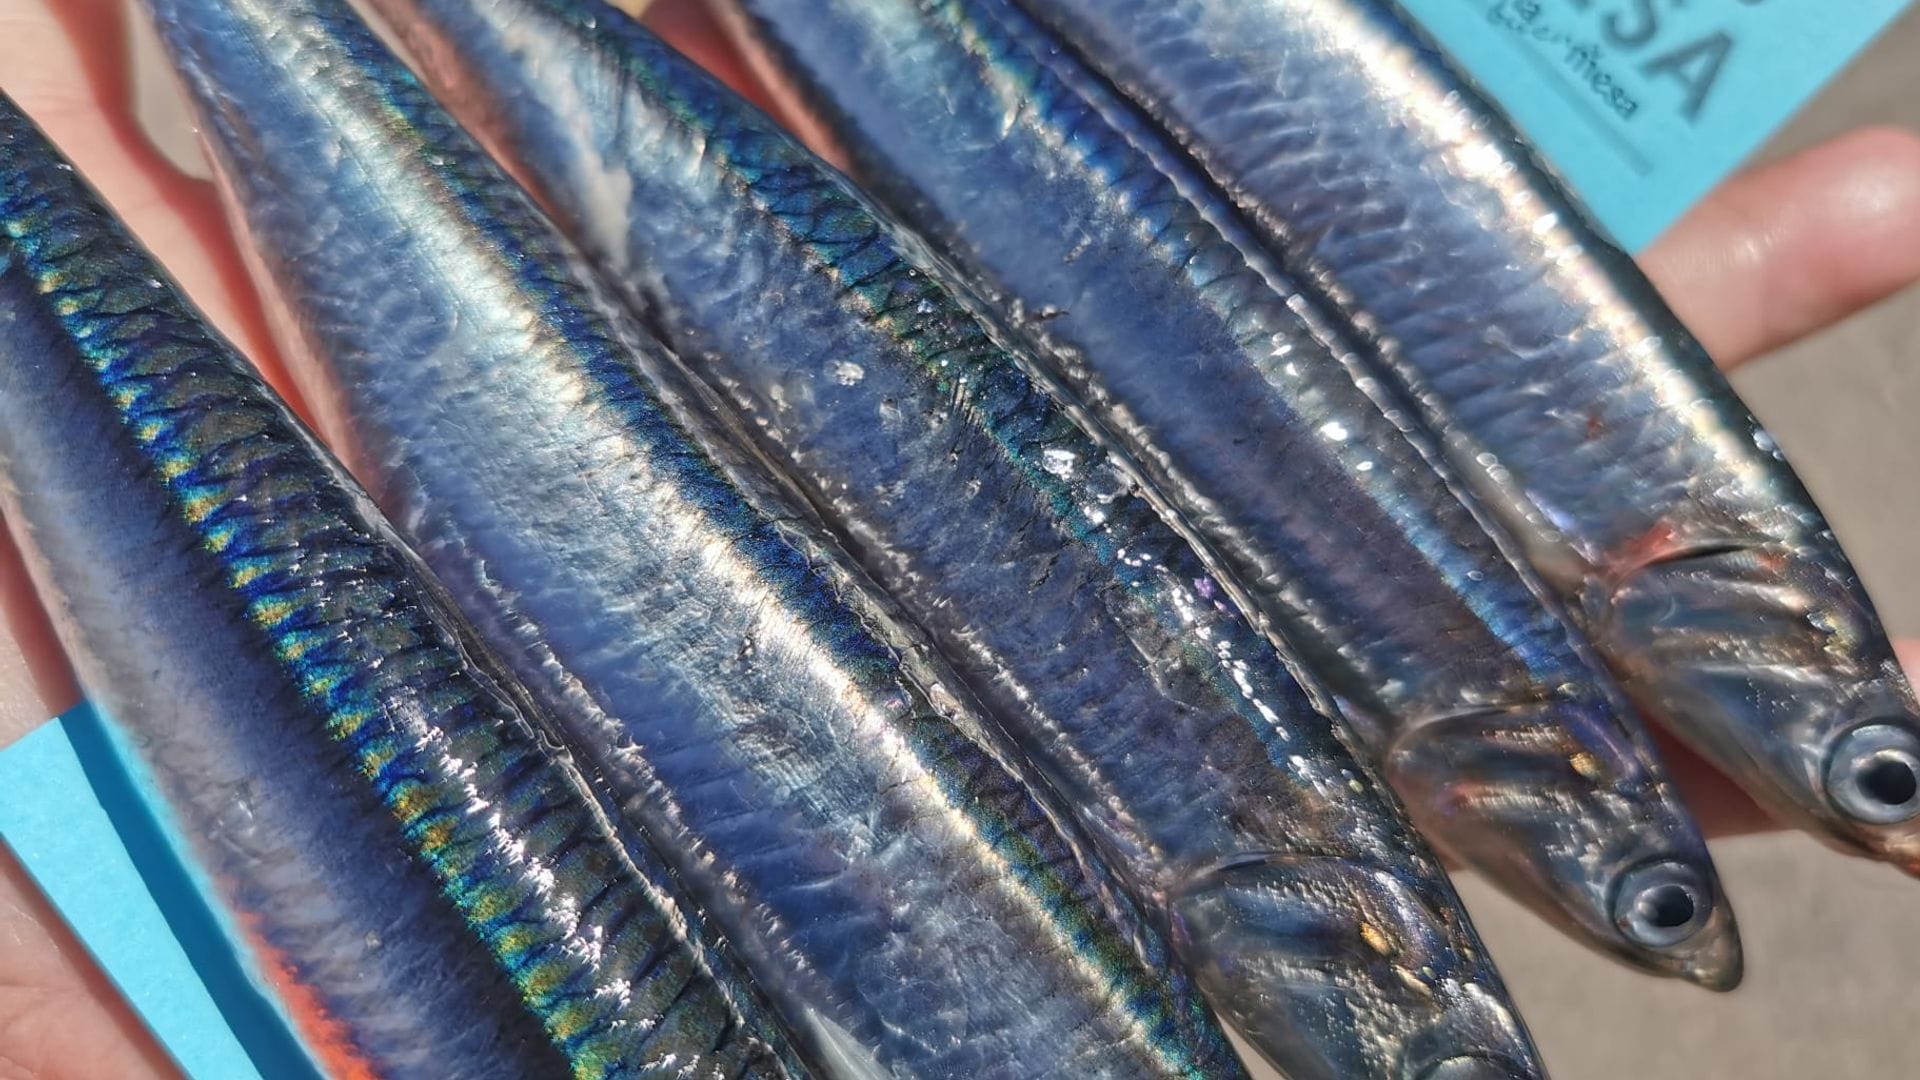 La costera: Descubre cuándo, cómo y dónde se pescan las mejores anchoas de la temporada